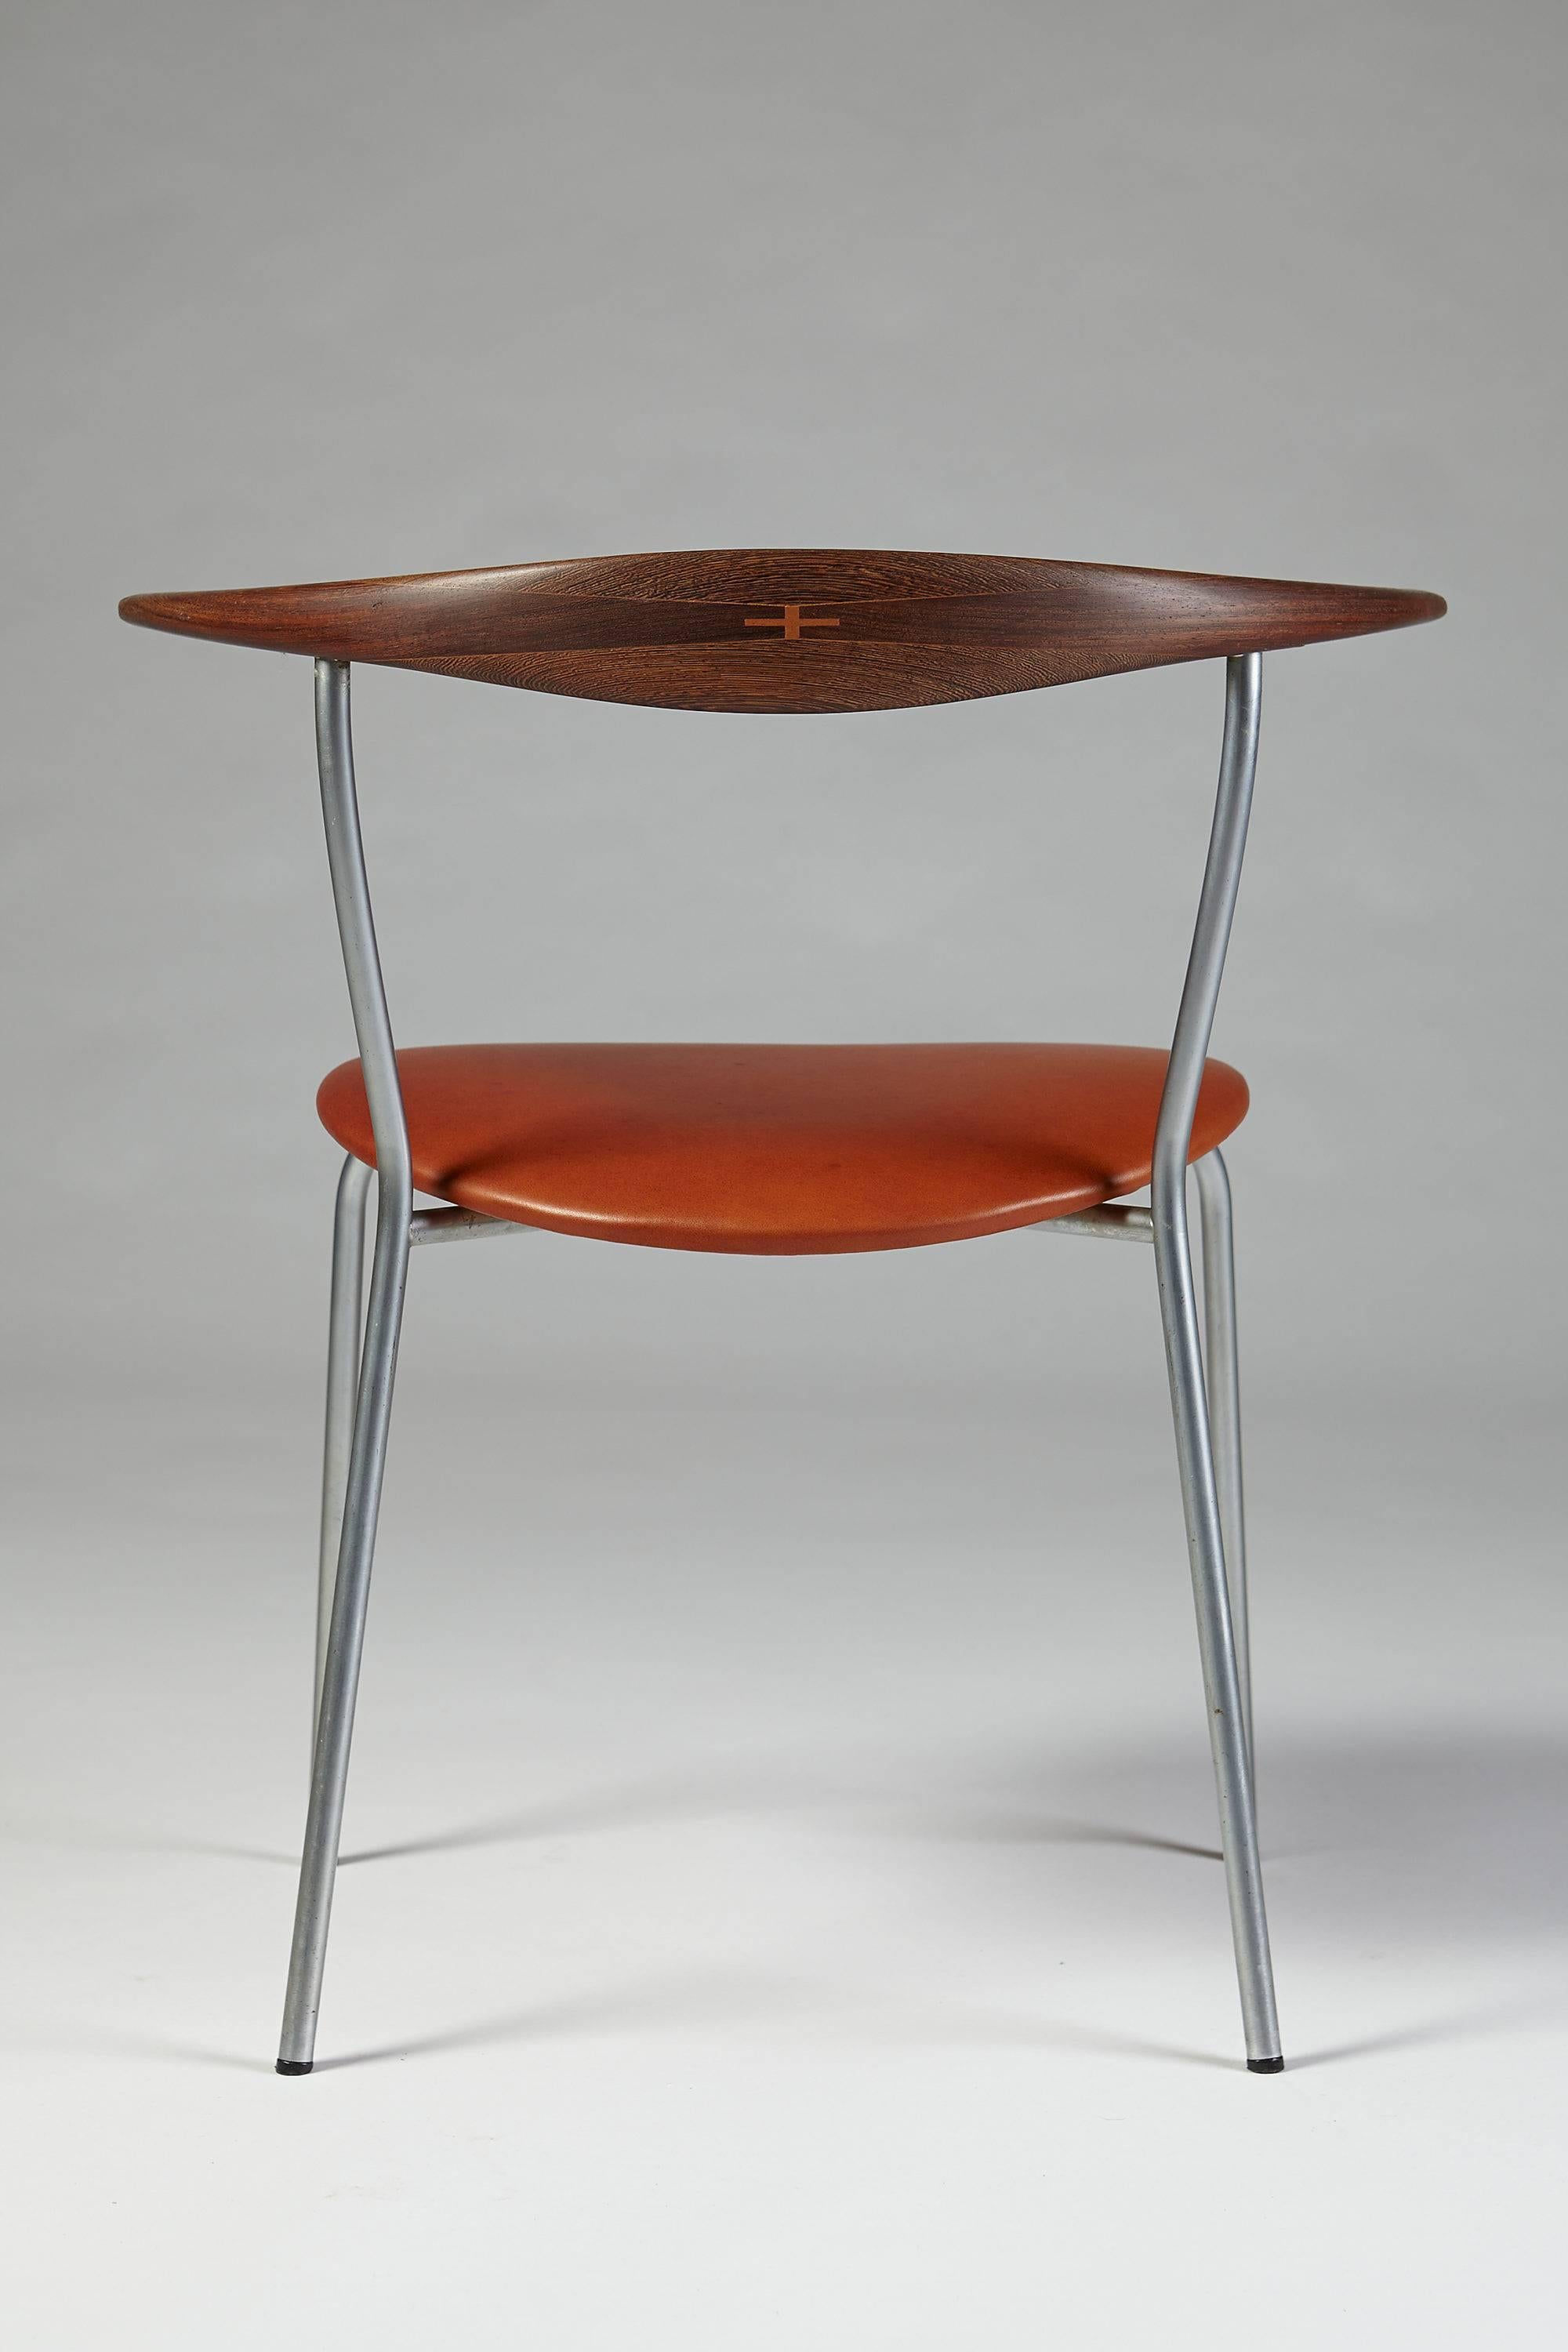 Mid-20th Century Dining Chairs Designed by Hans Wegner for Johannes Hansen, Denmark, 1960s For Sale